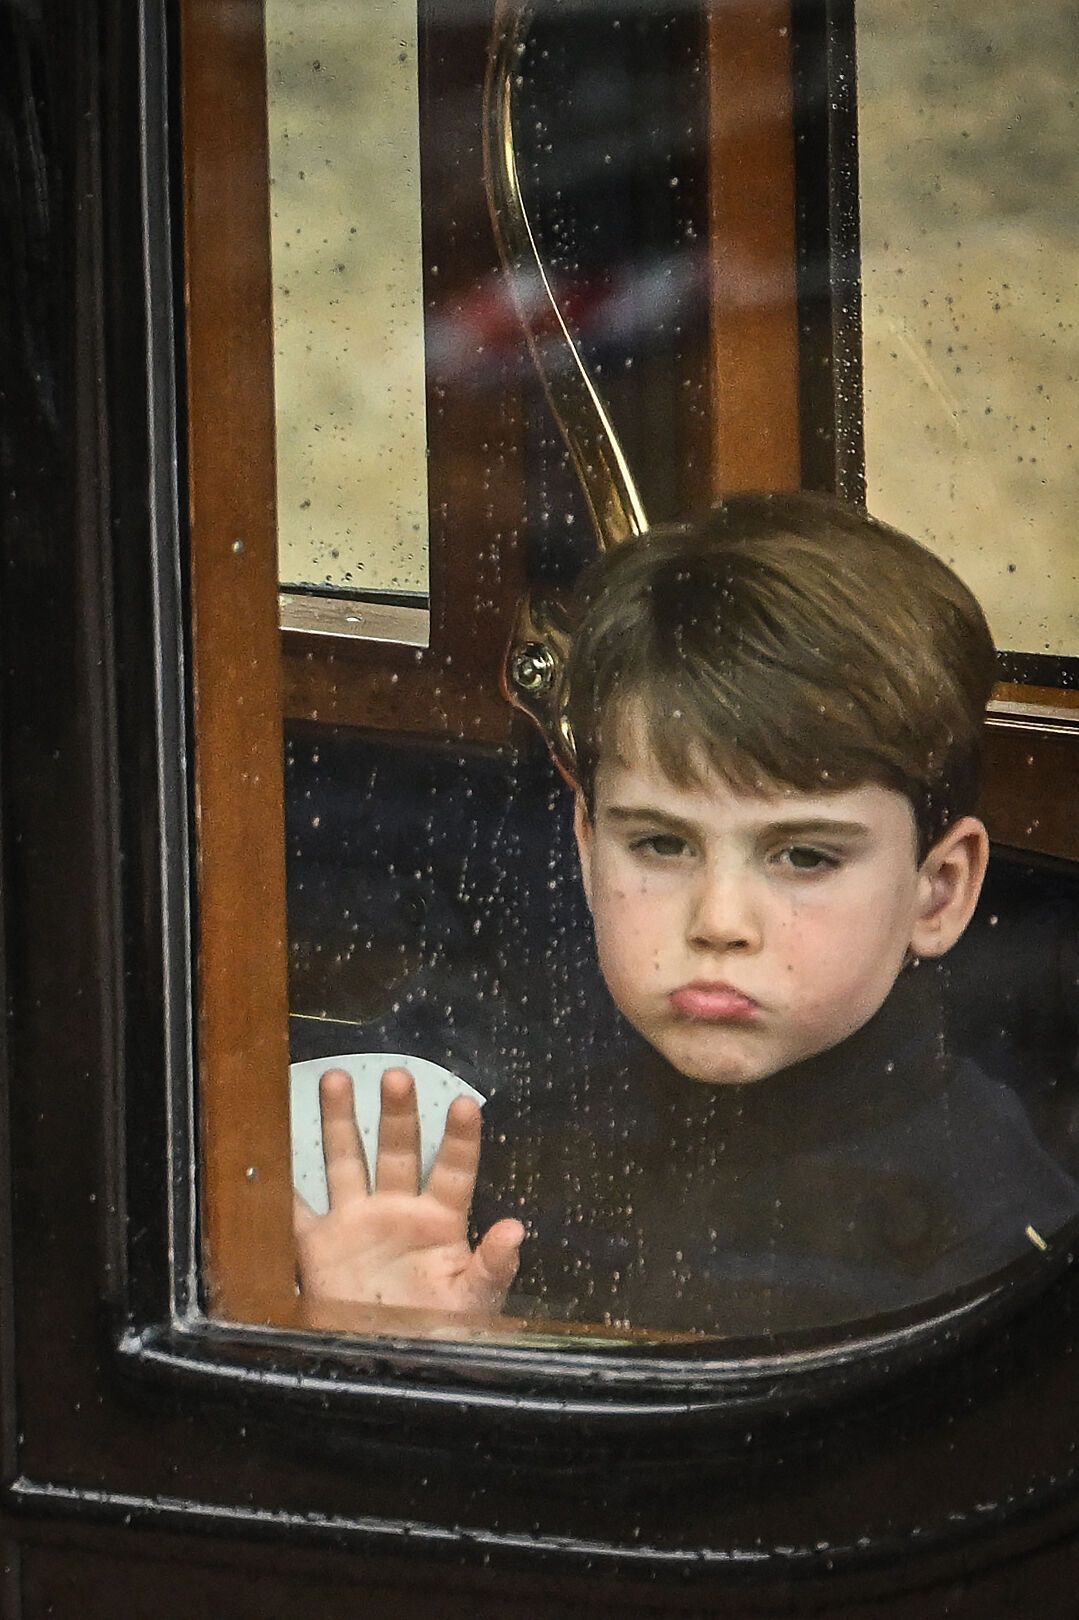 Пятилетний принц Луи снова зажигает: заскучавший внук Чарльза III на коронации кривлялся и отвлекал сестру. Забавные кадры